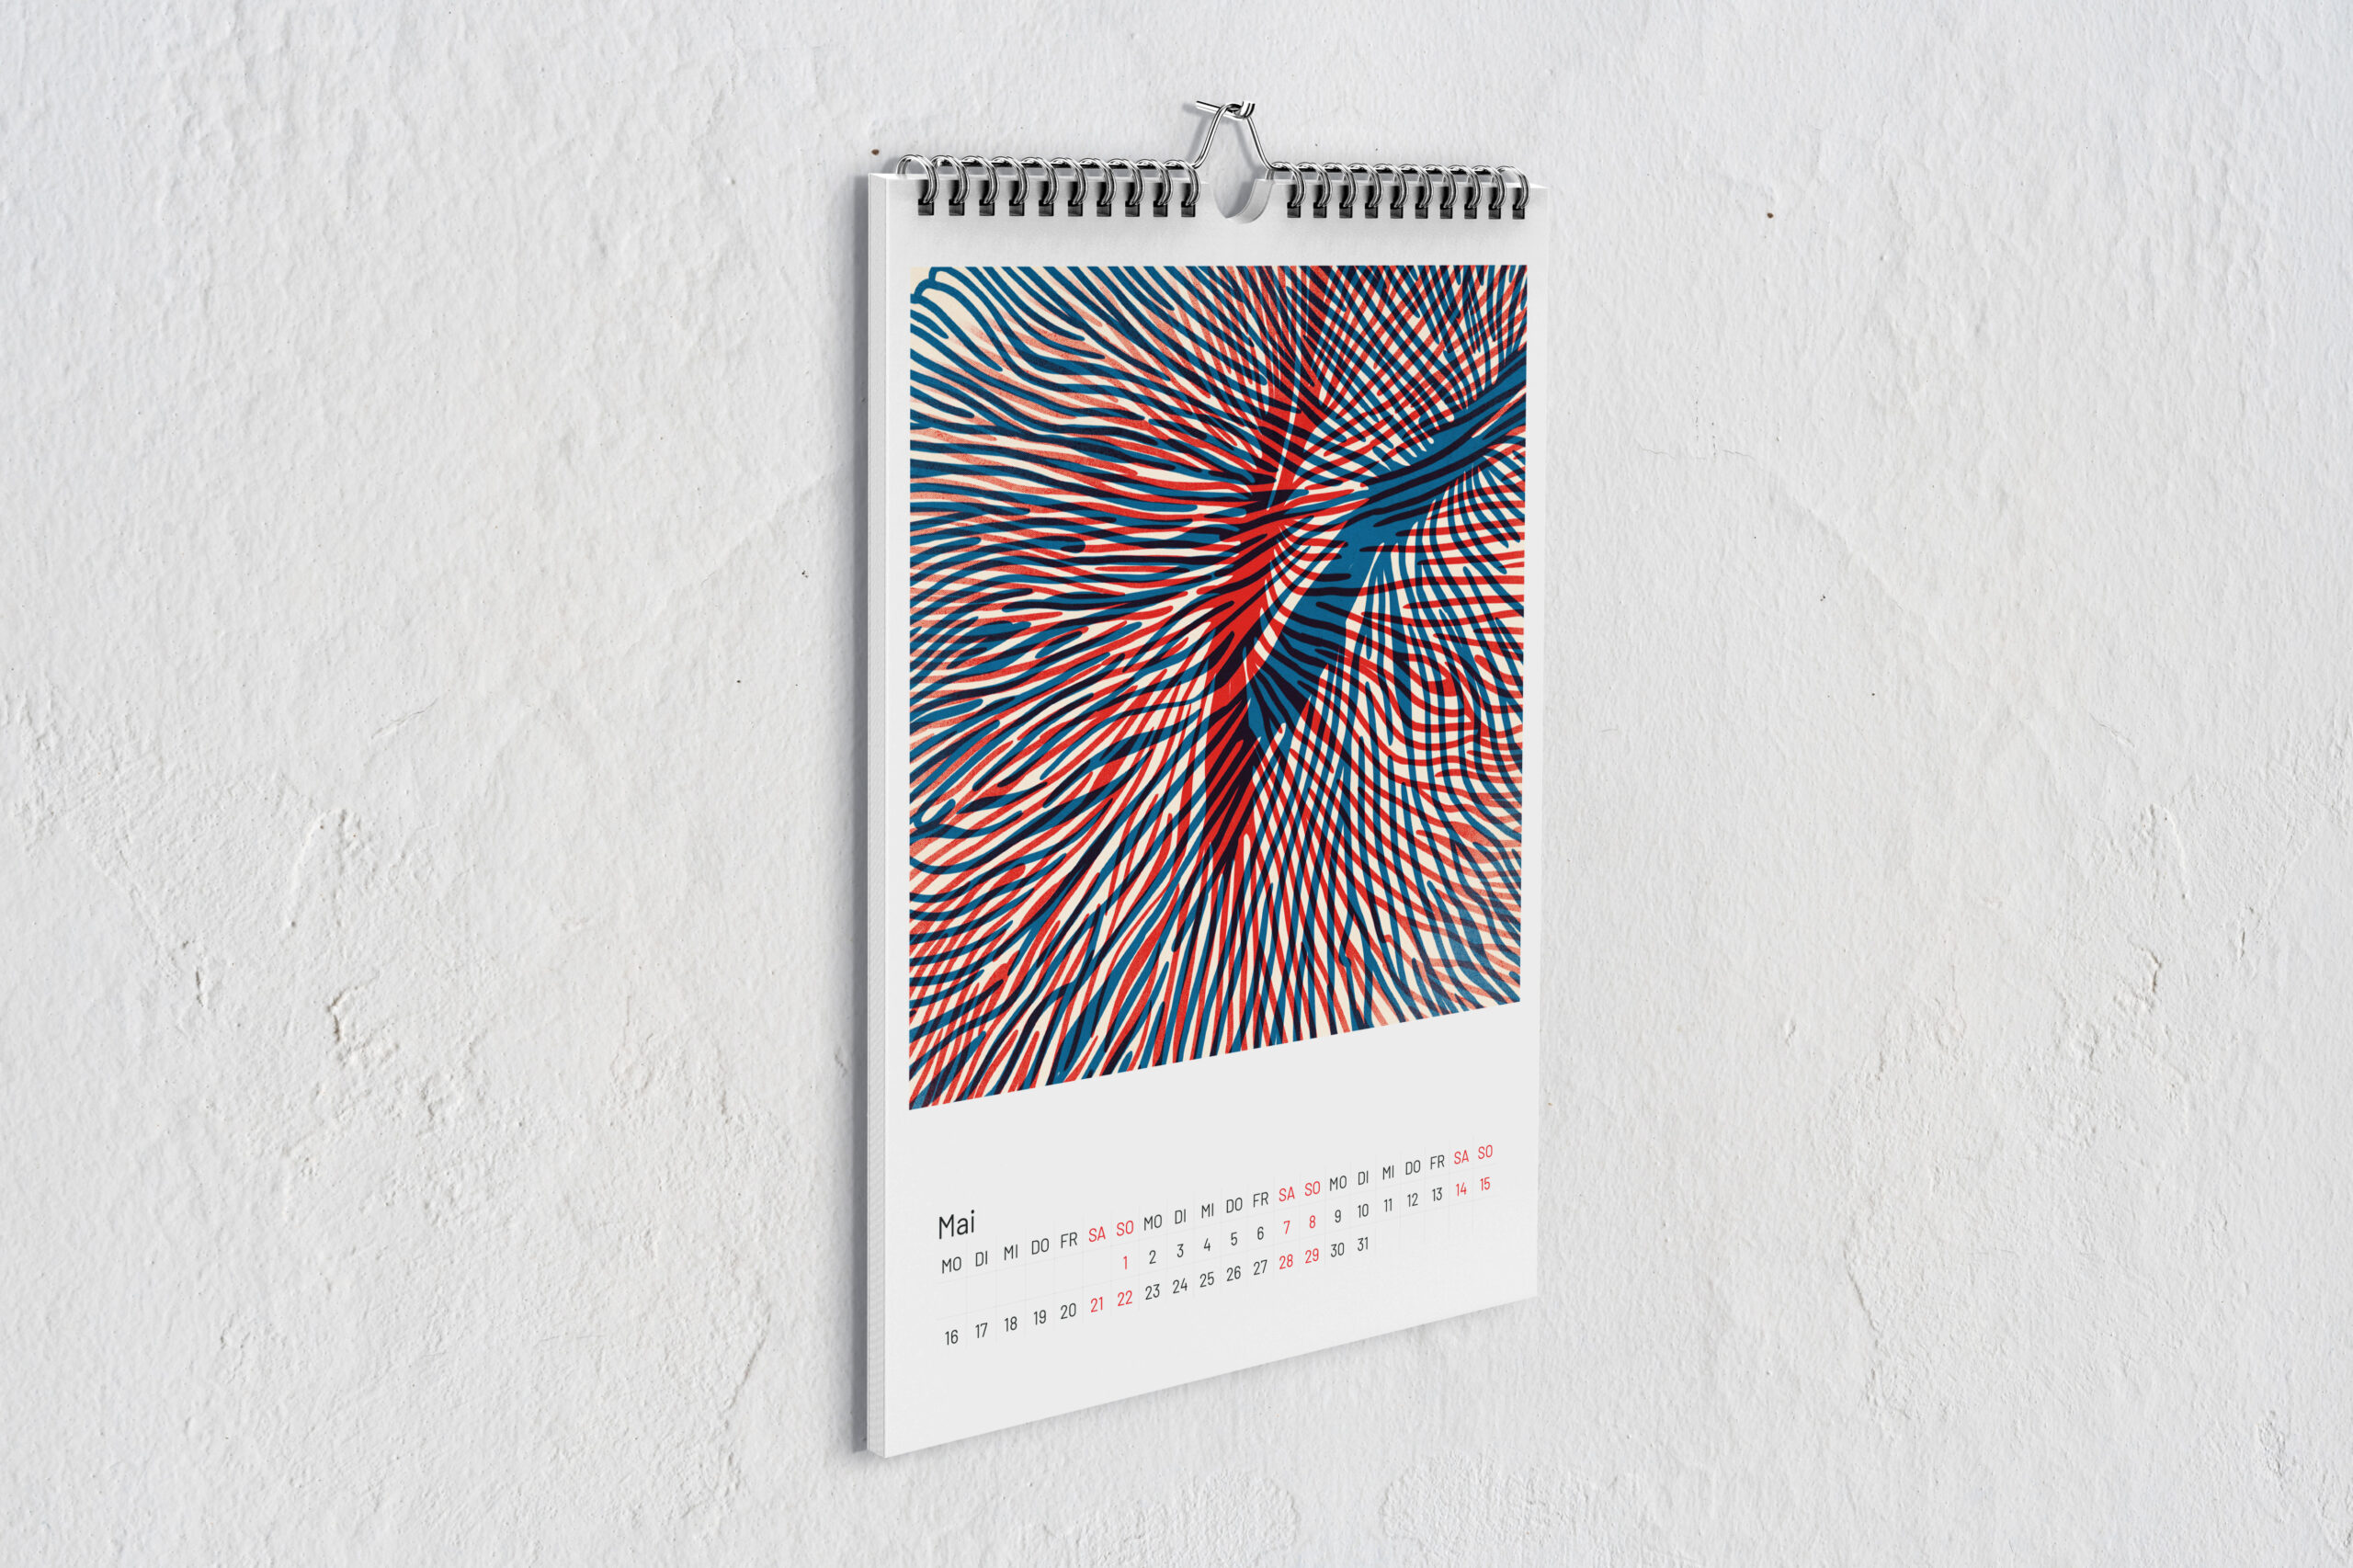 Kalenderblatt Koralle für Mai mit zwei digitalen Zeichnungen im Risografie Stil. Die Zeichnungen in rot und blau überlagern sich.